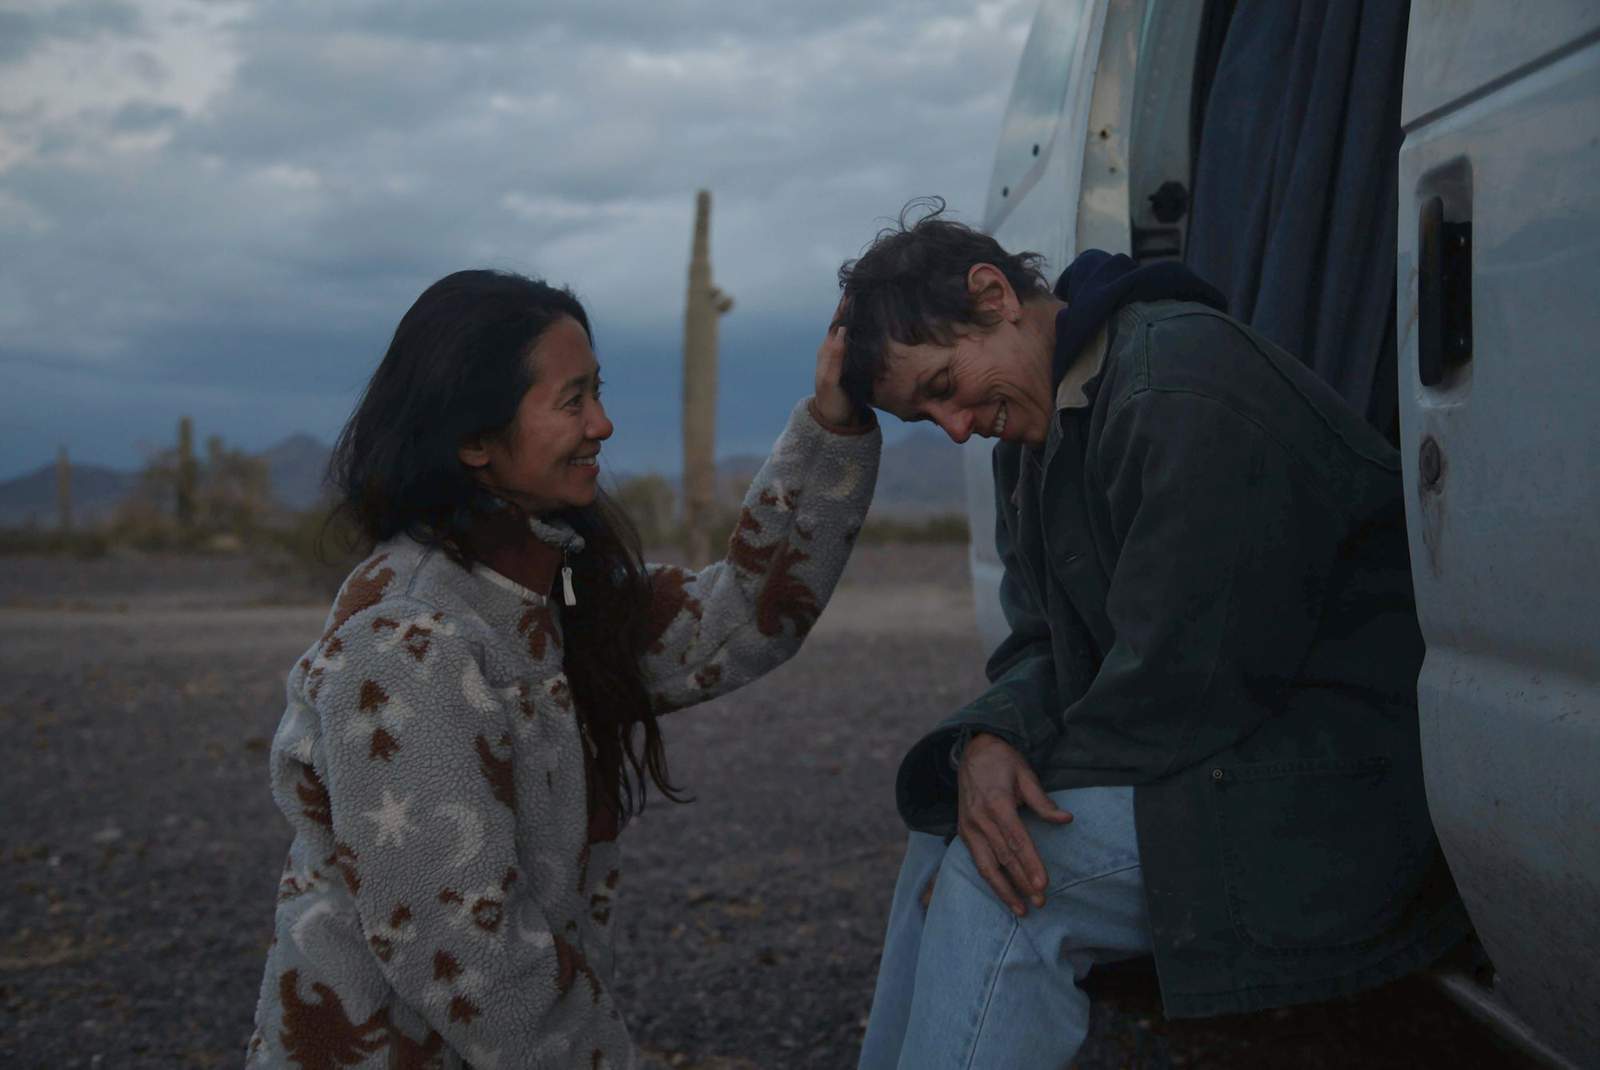 'Nomadland' wins 4 BAFTAs including best picture, director